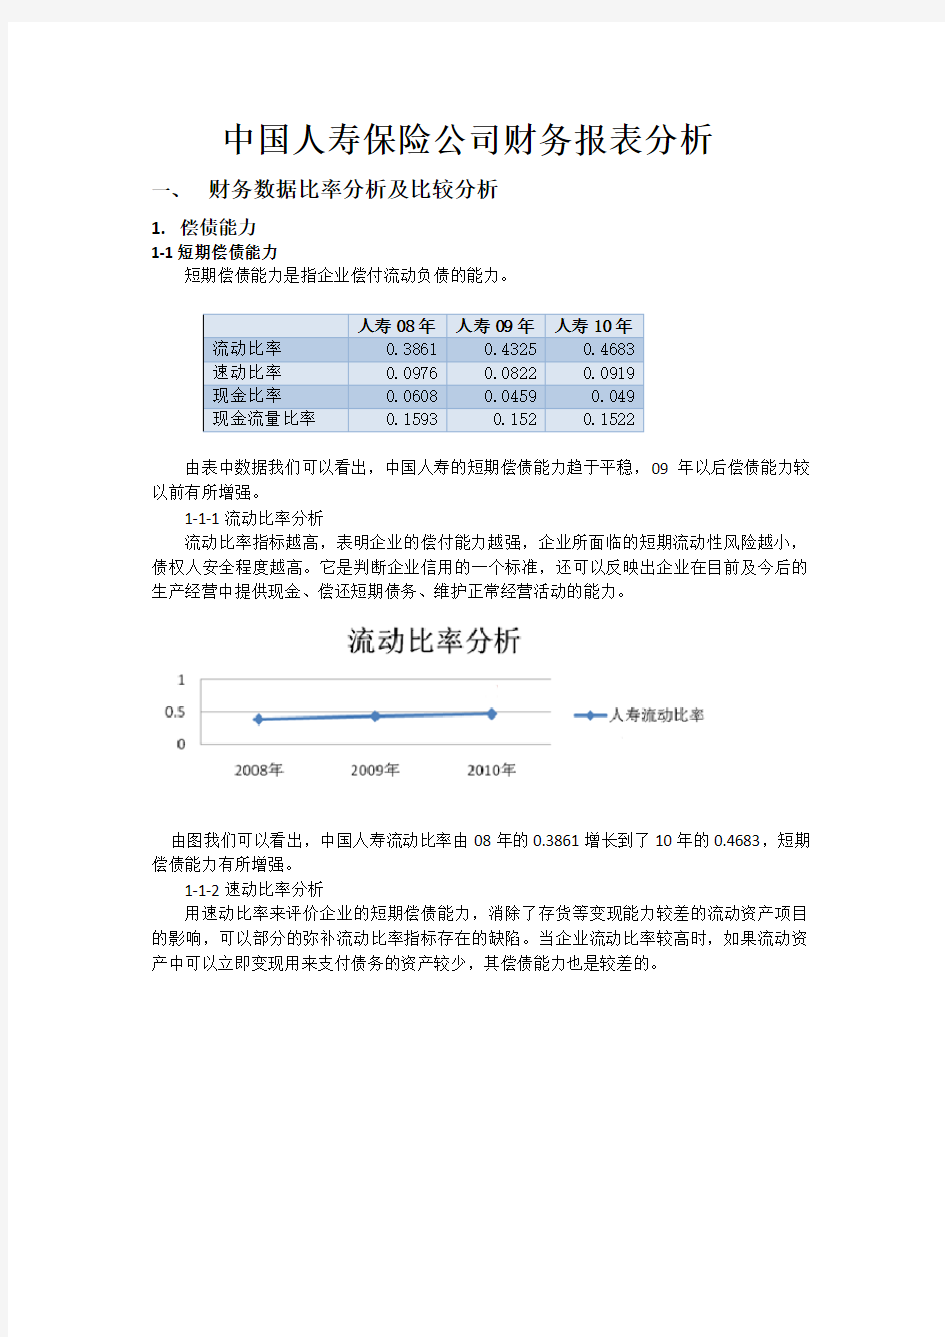 中国人寿财务报表分析